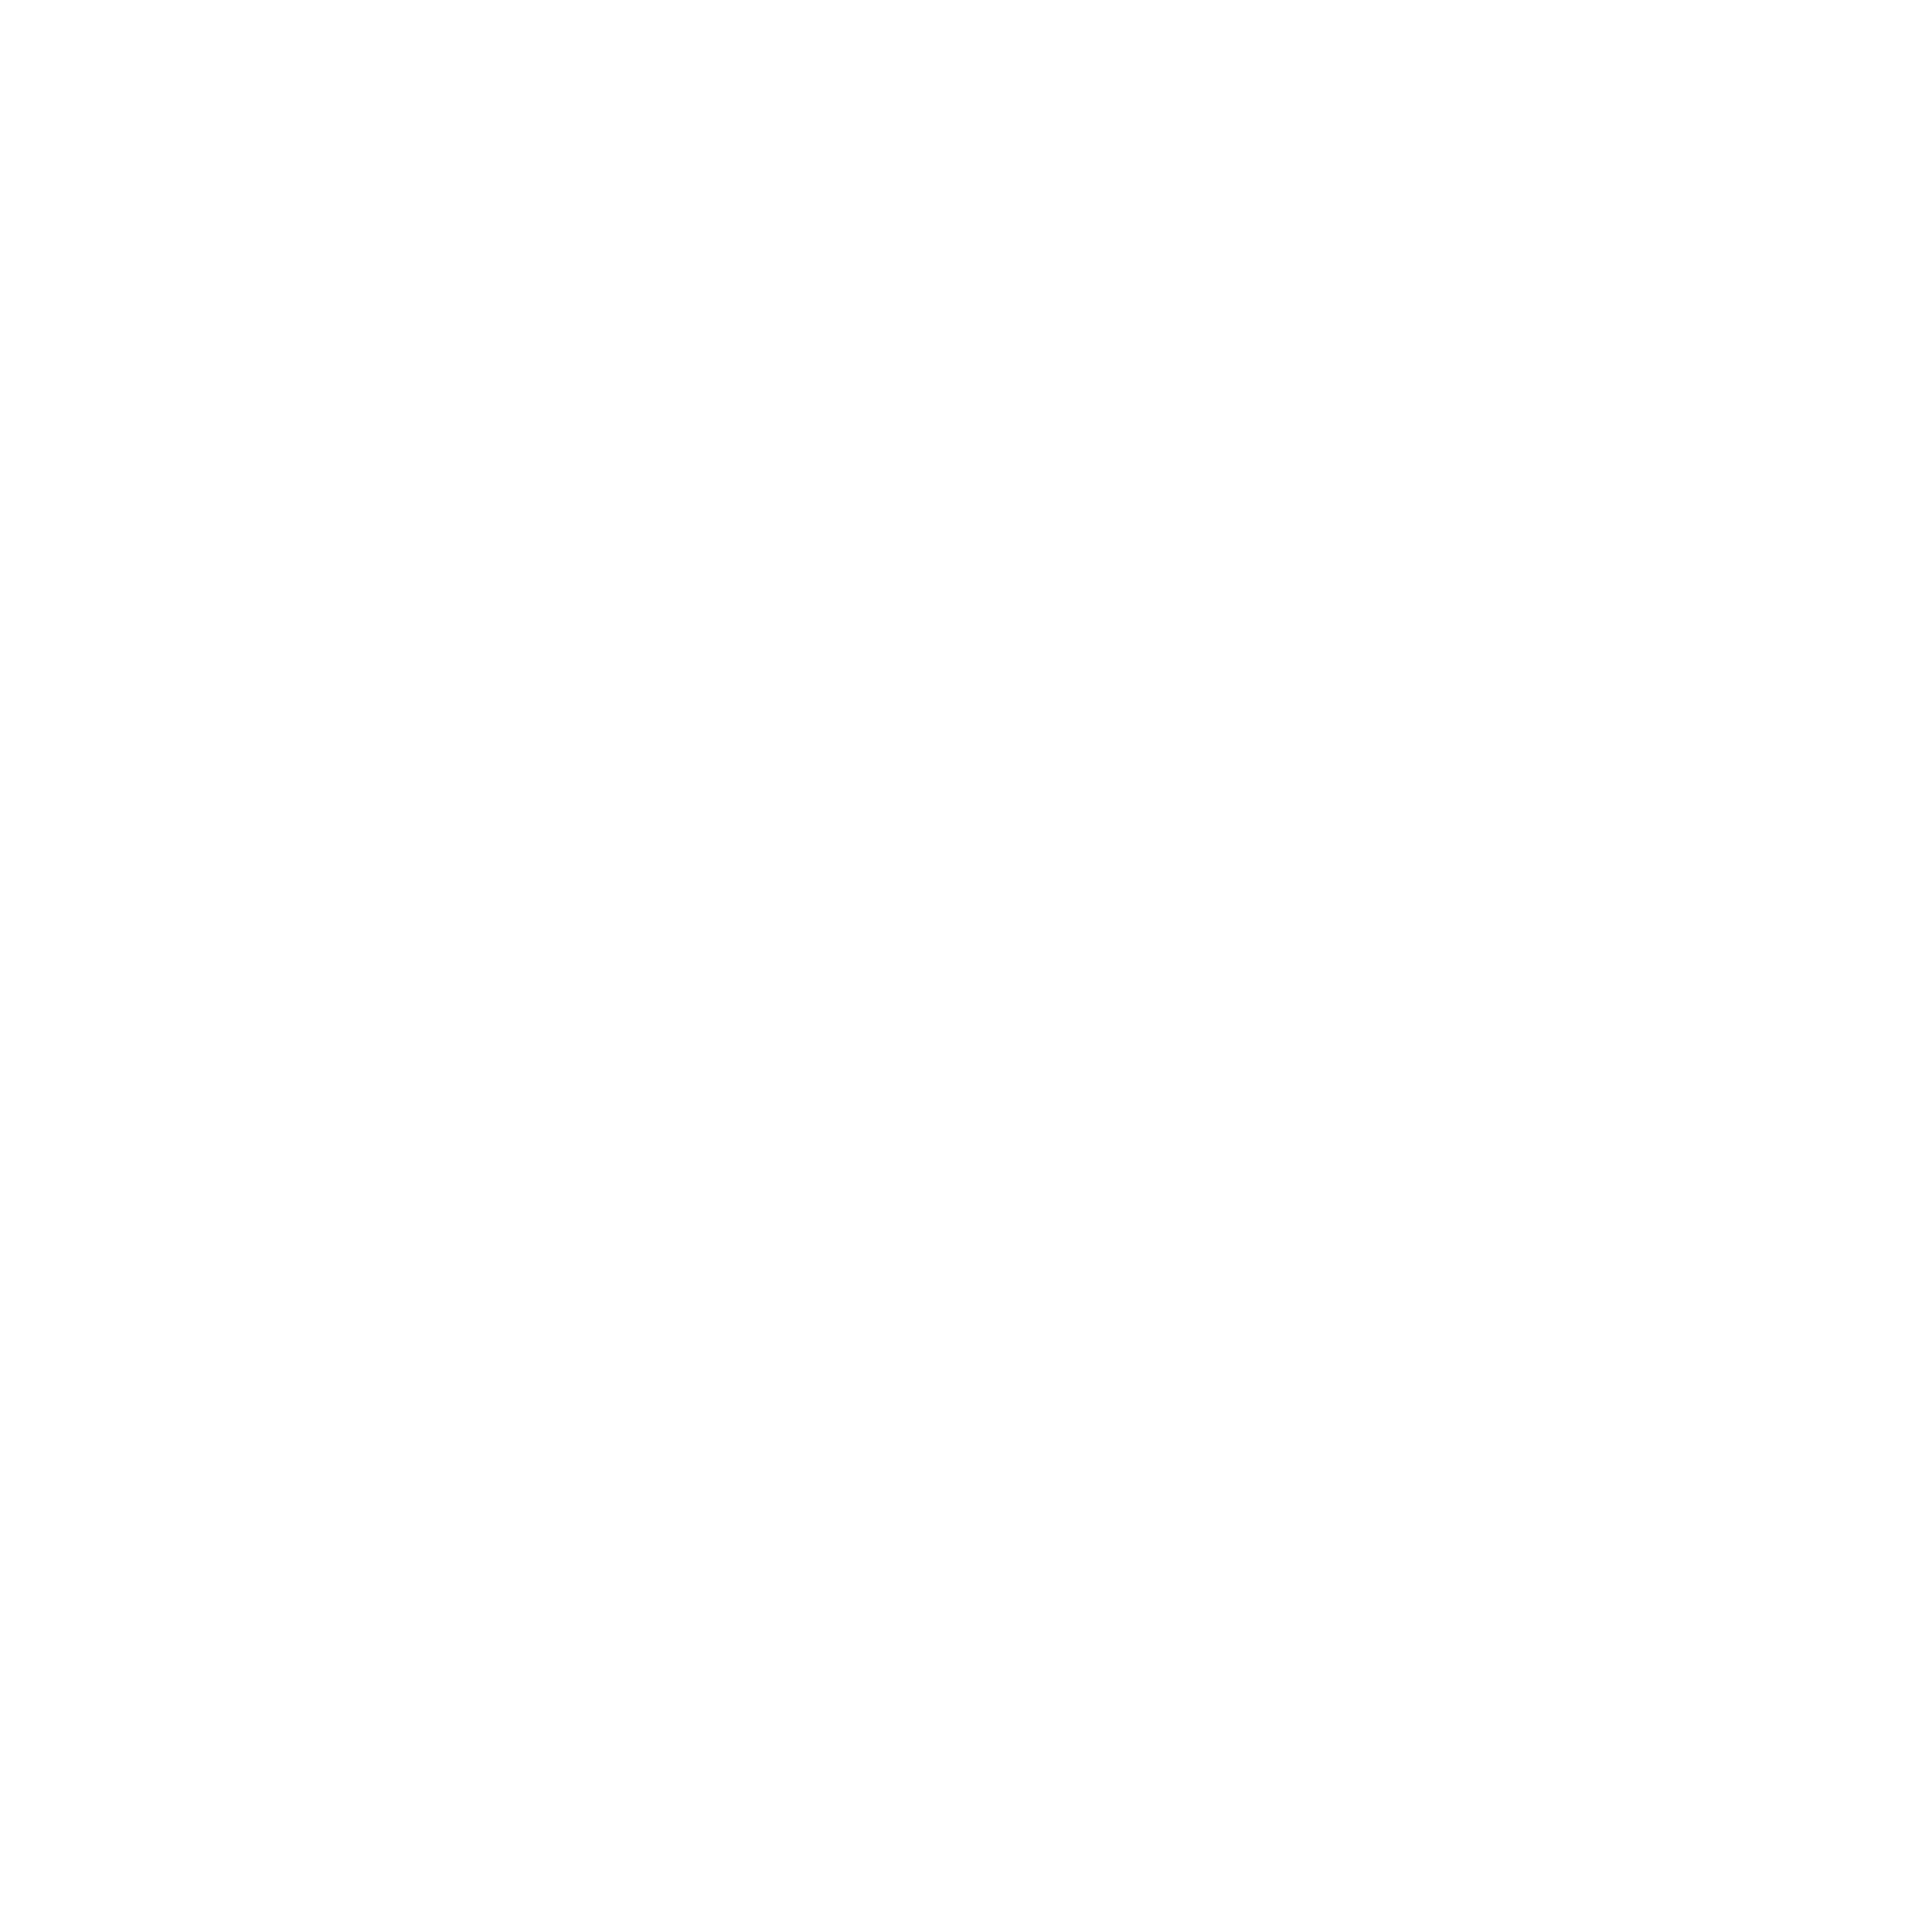 FINN'S FINALE Shop